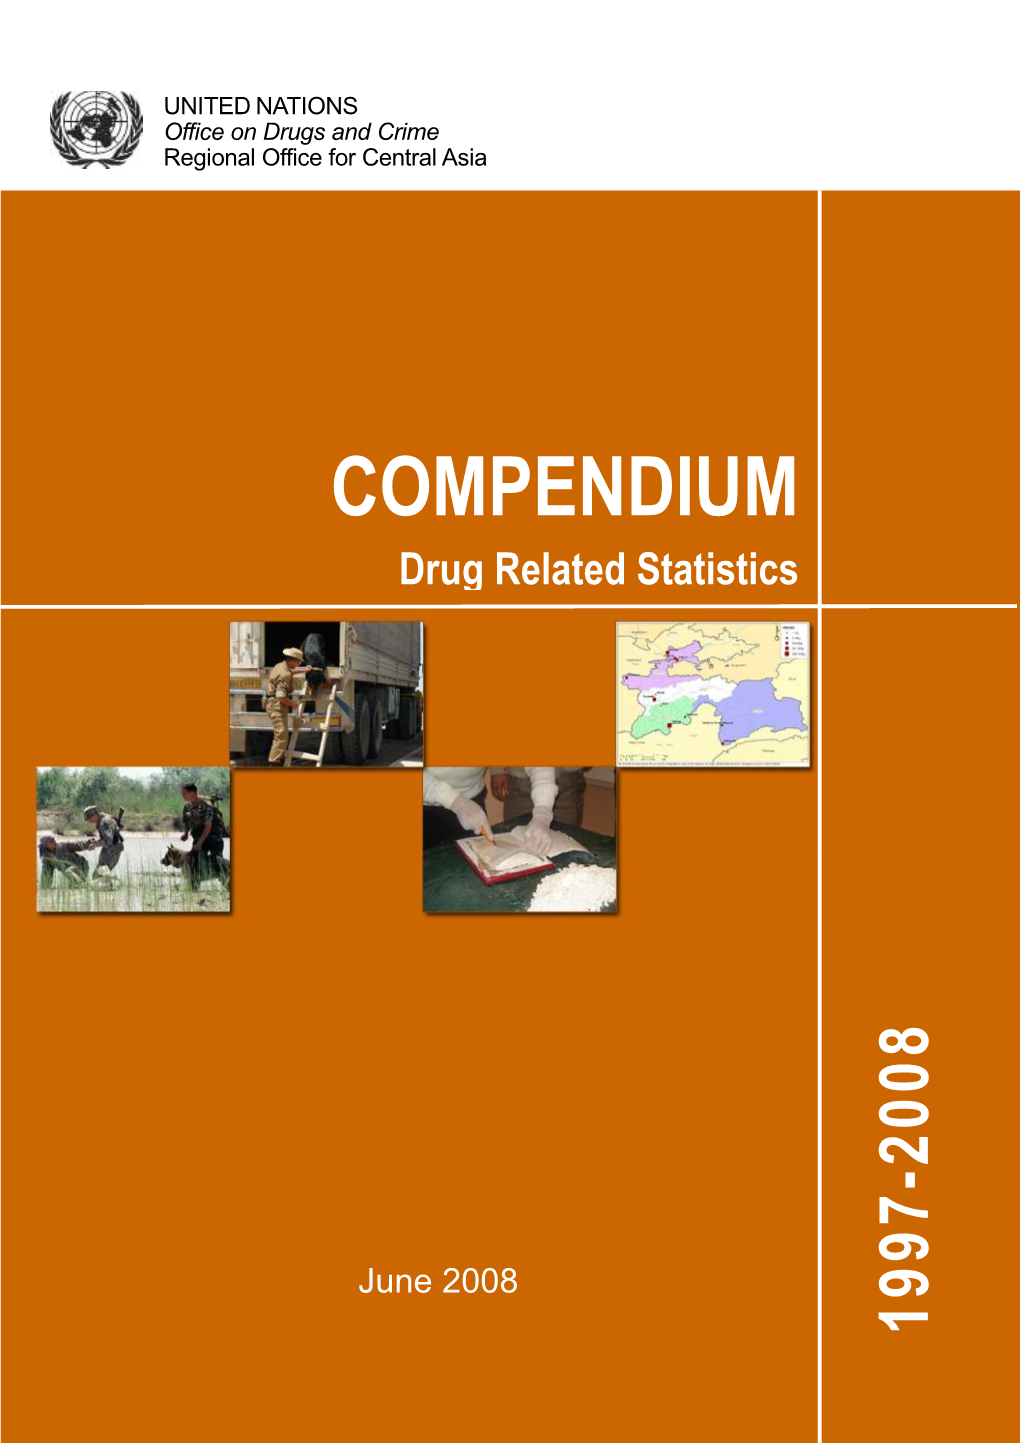 COMPENDIUM Drug Related Statistics